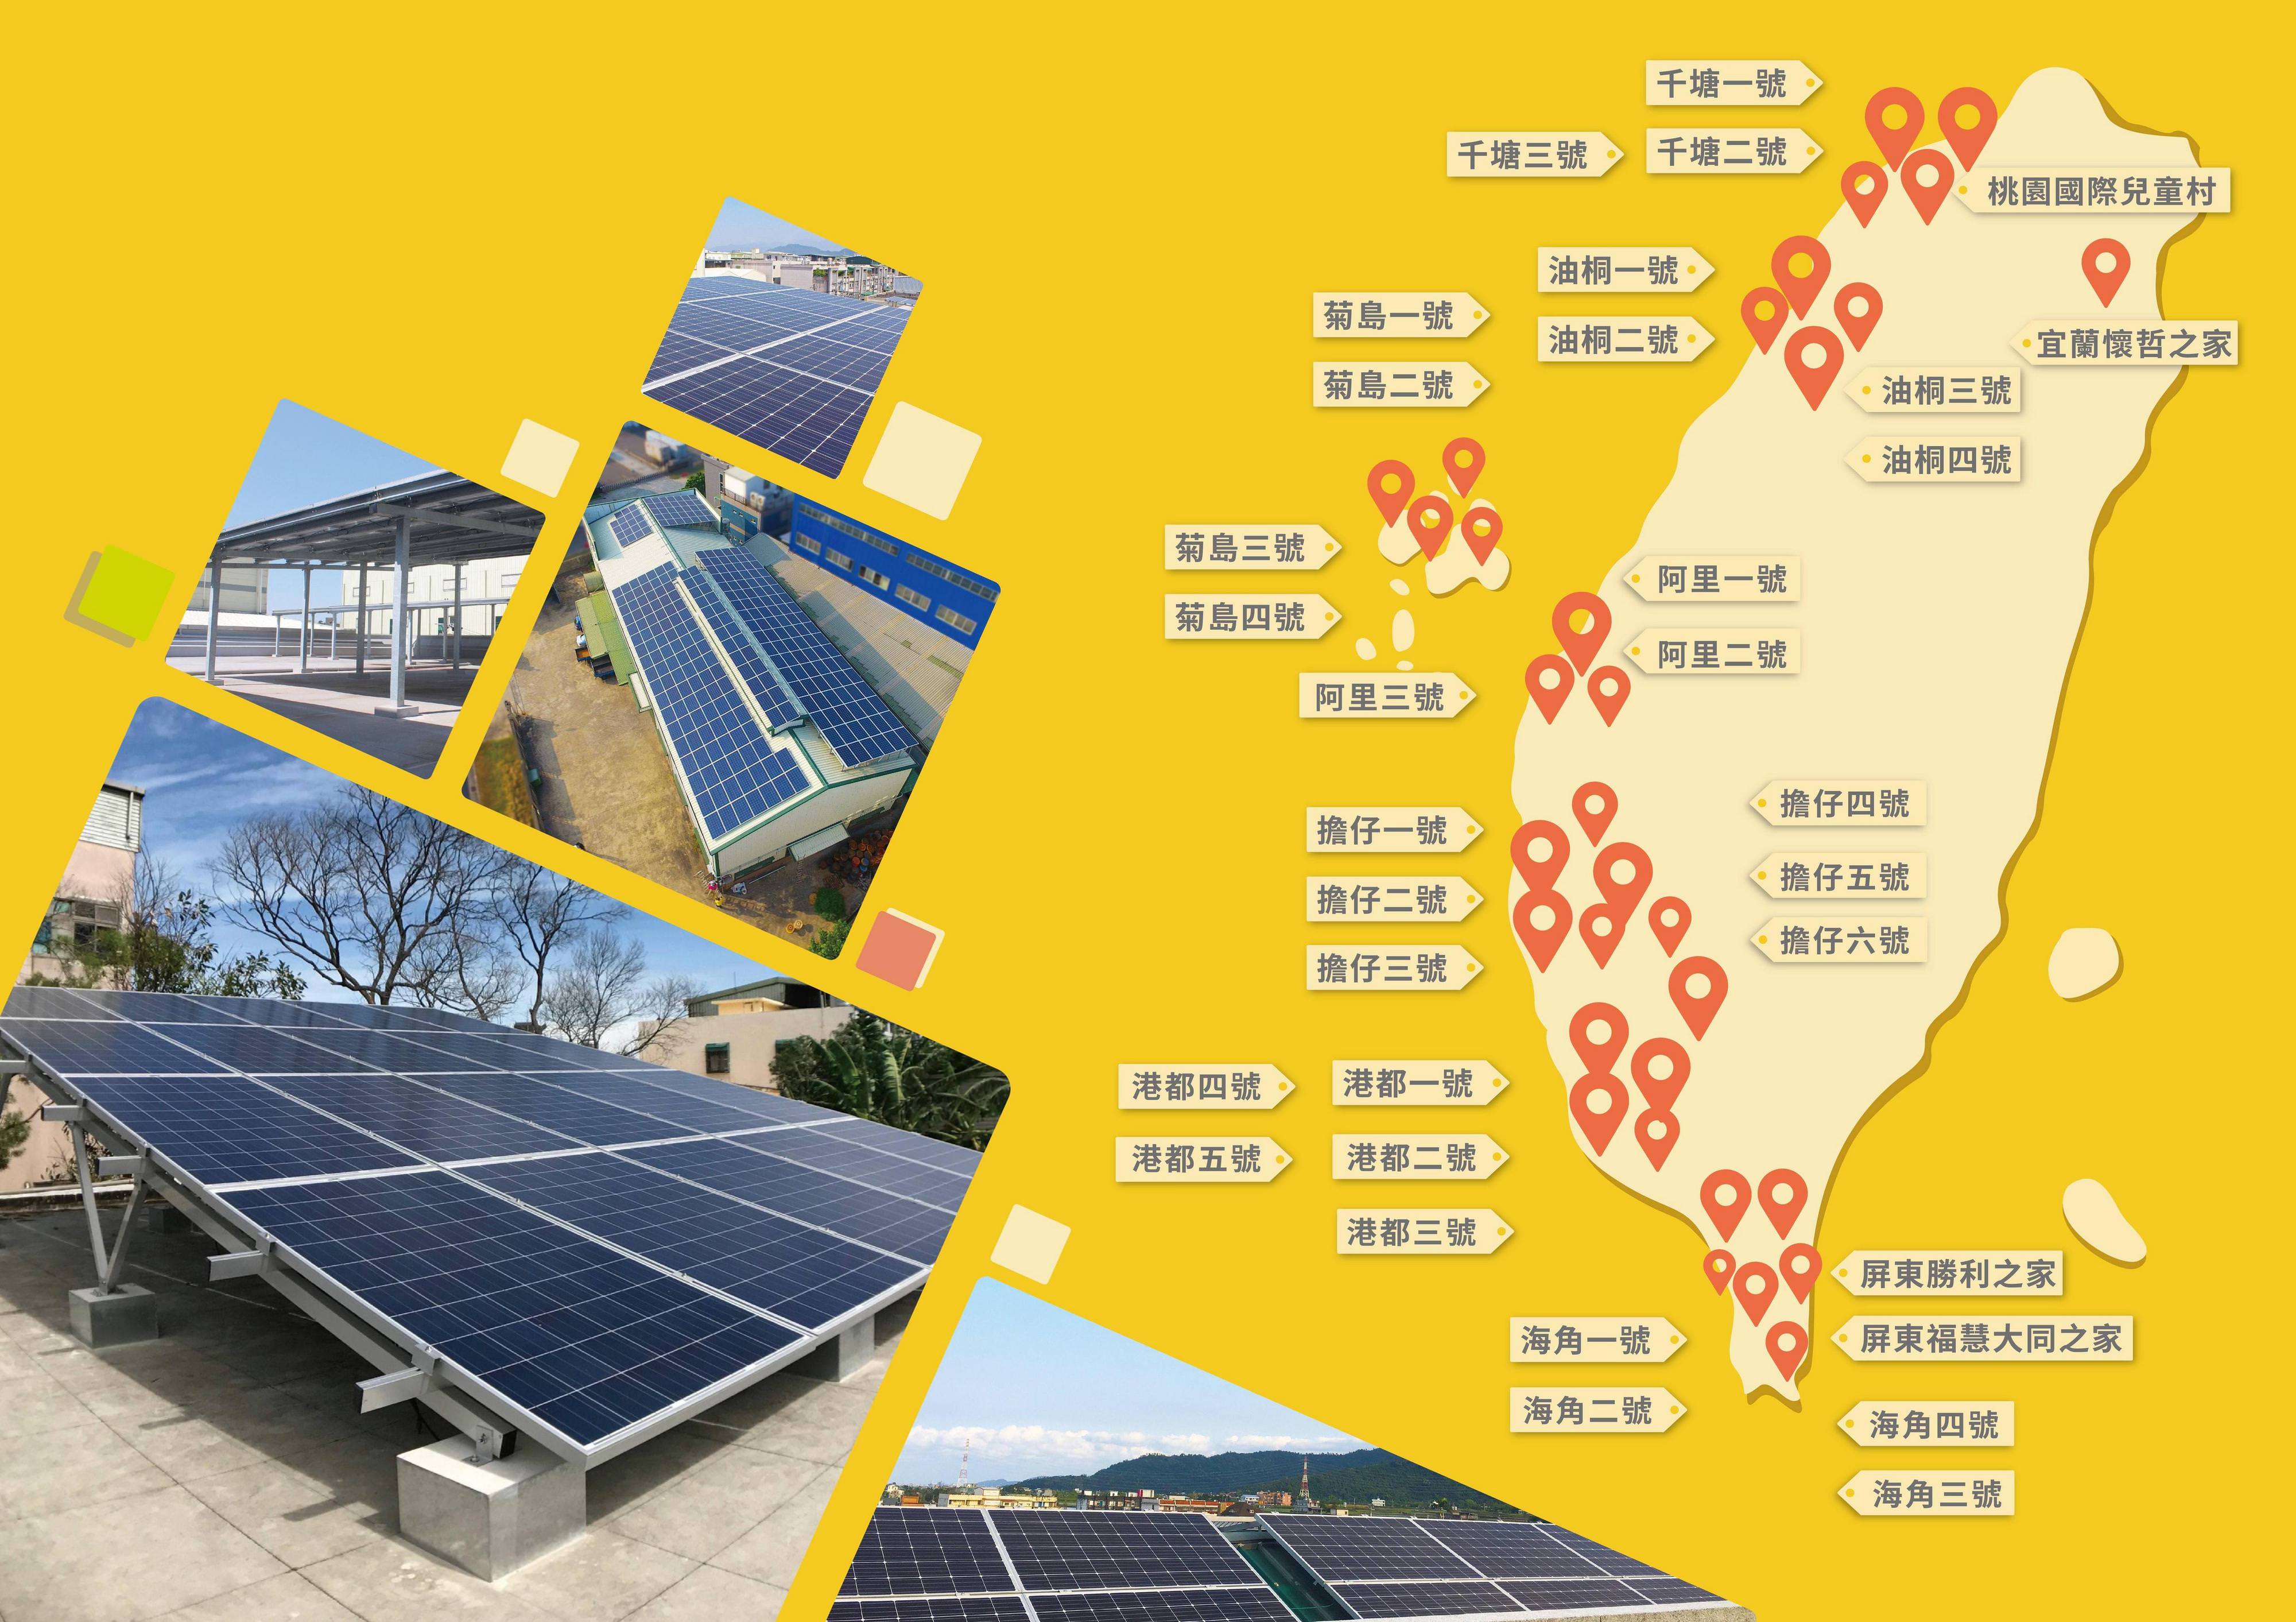 目前陽光伏特家已完成33座以上的太陽能電廠